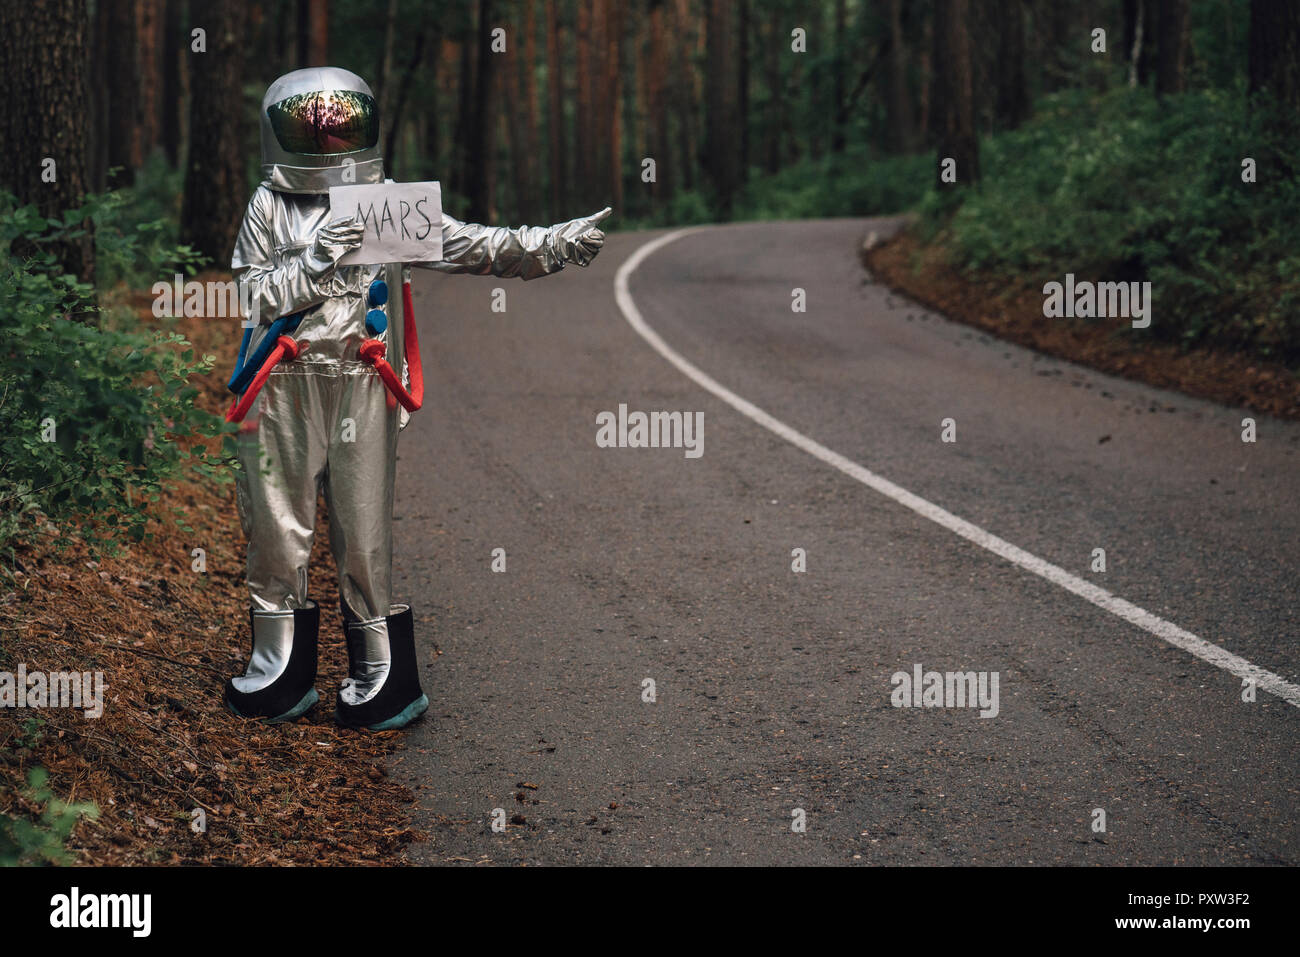 Spaceman per Anhalter zum Mars, stehend auf der Straße im Wald Stockfoto